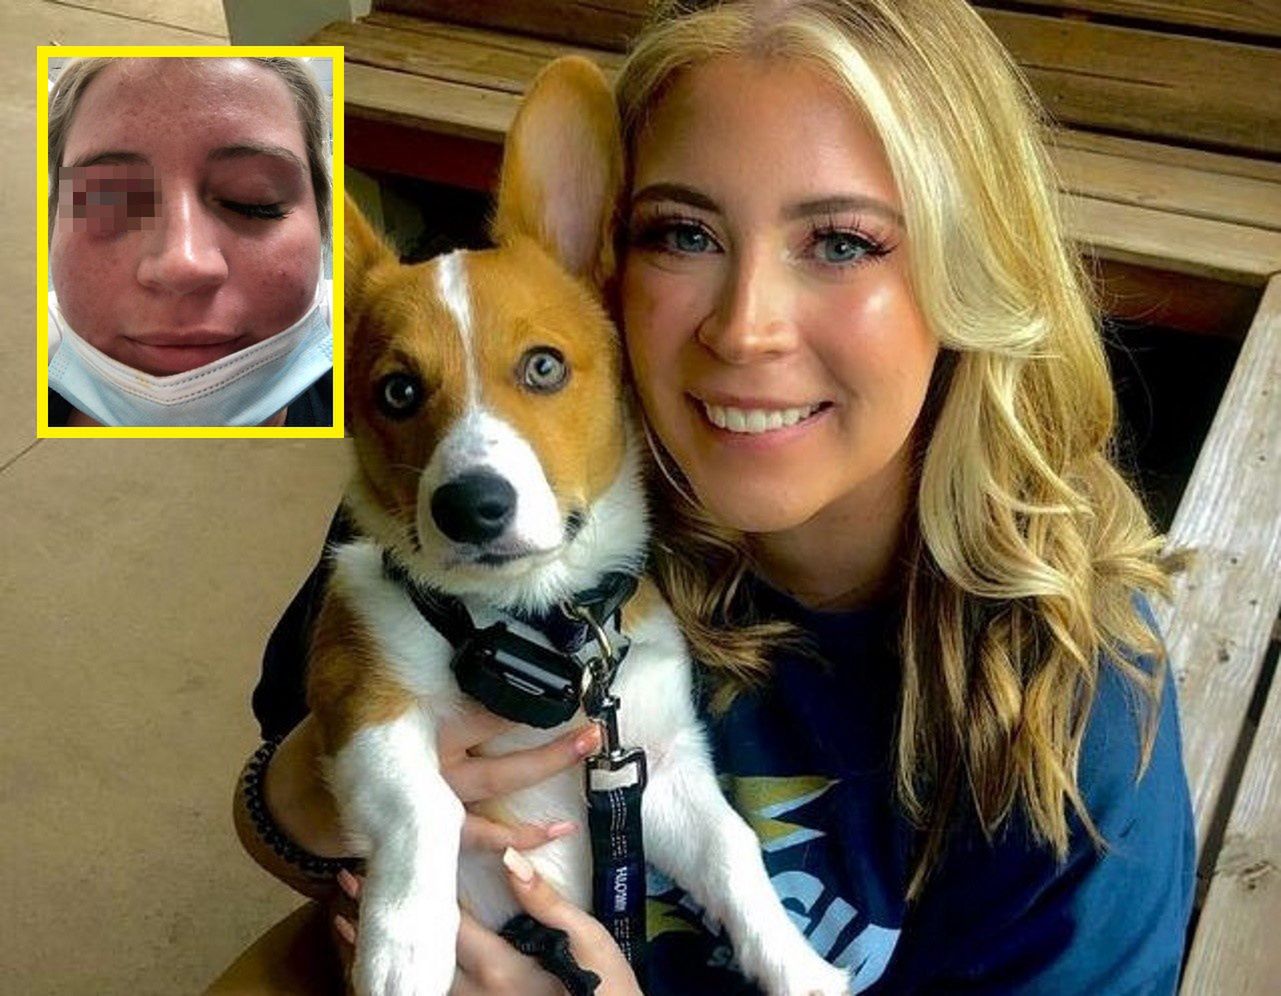 Tragedia podczas zabiegu upiększającego. 23-latka straciła powiekę